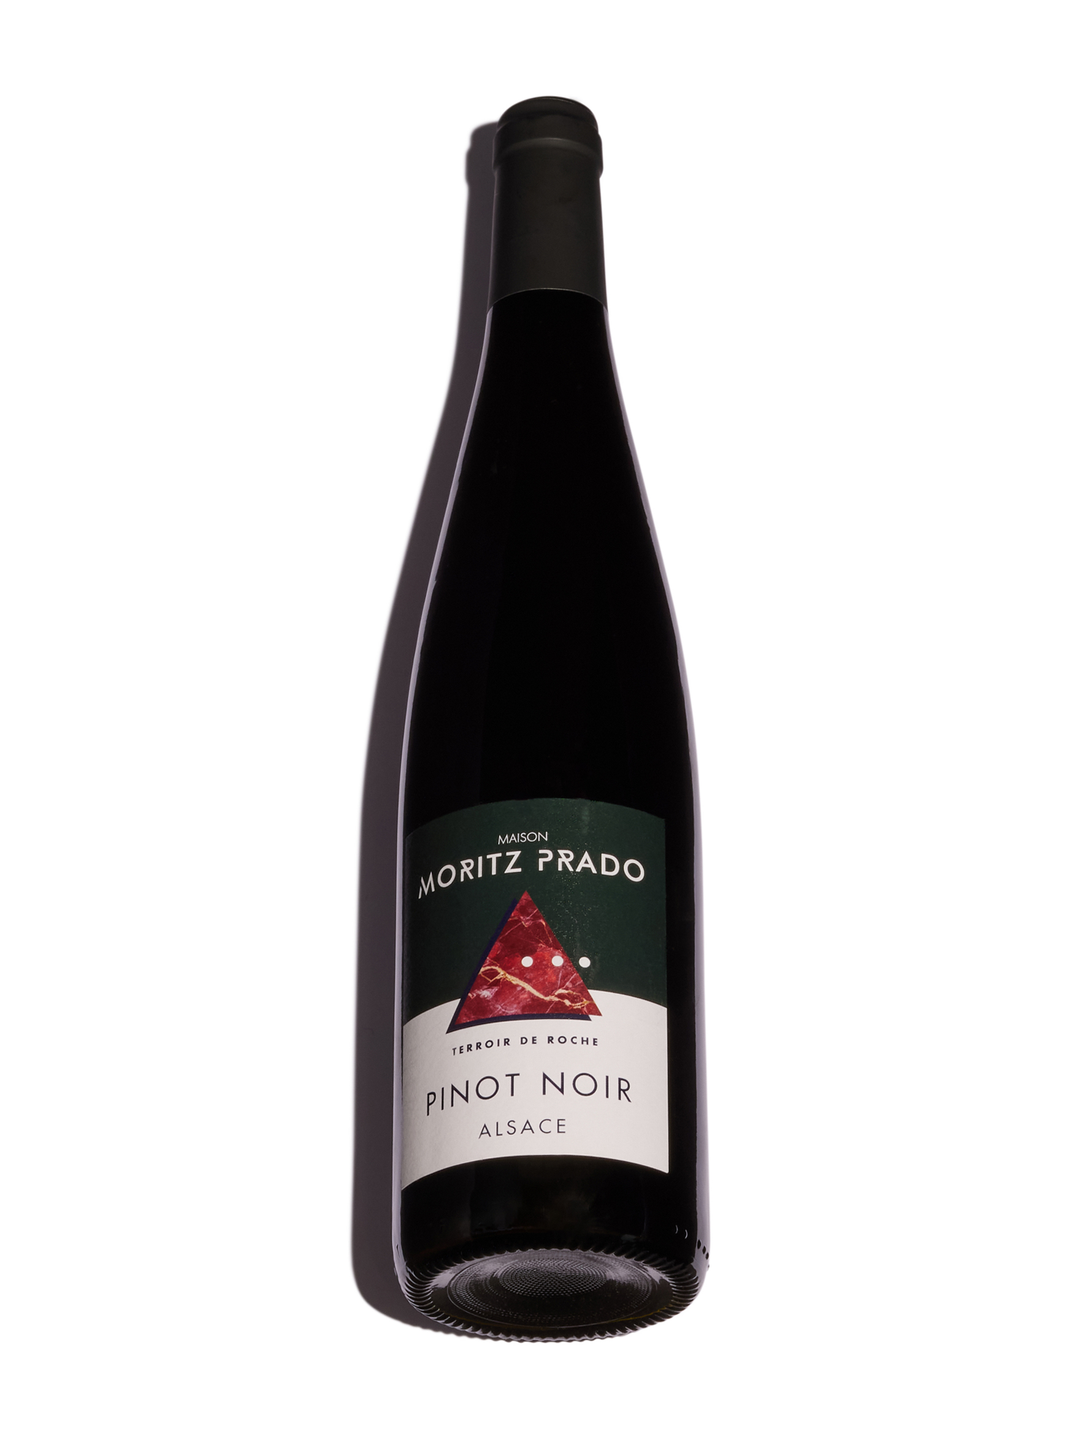 Terroir de Roche Pinot Noir 2022 - 33.00$